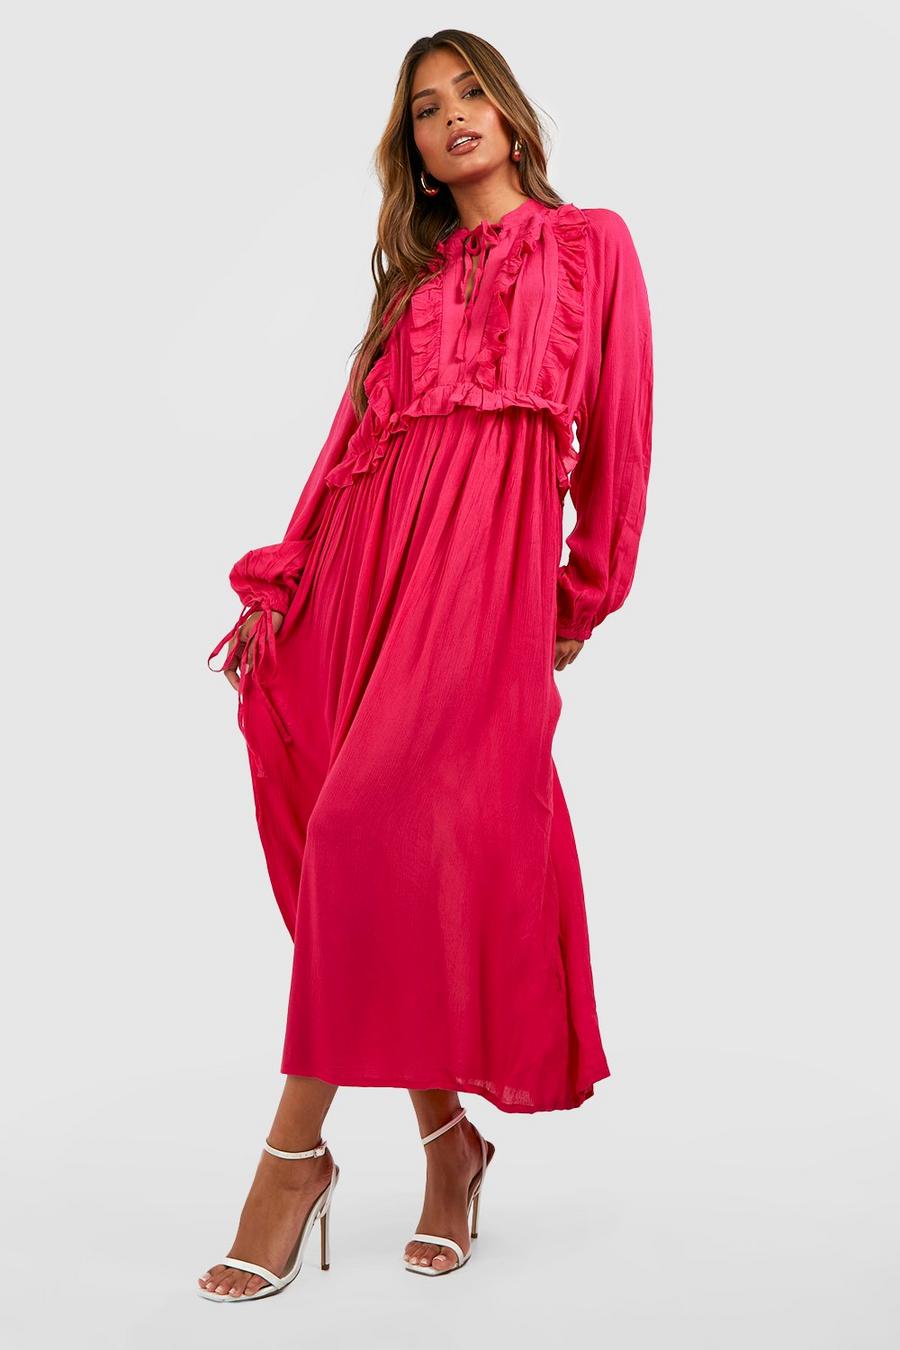 Smok-Kleid mit Rüschendetail, Hot pink image number 1